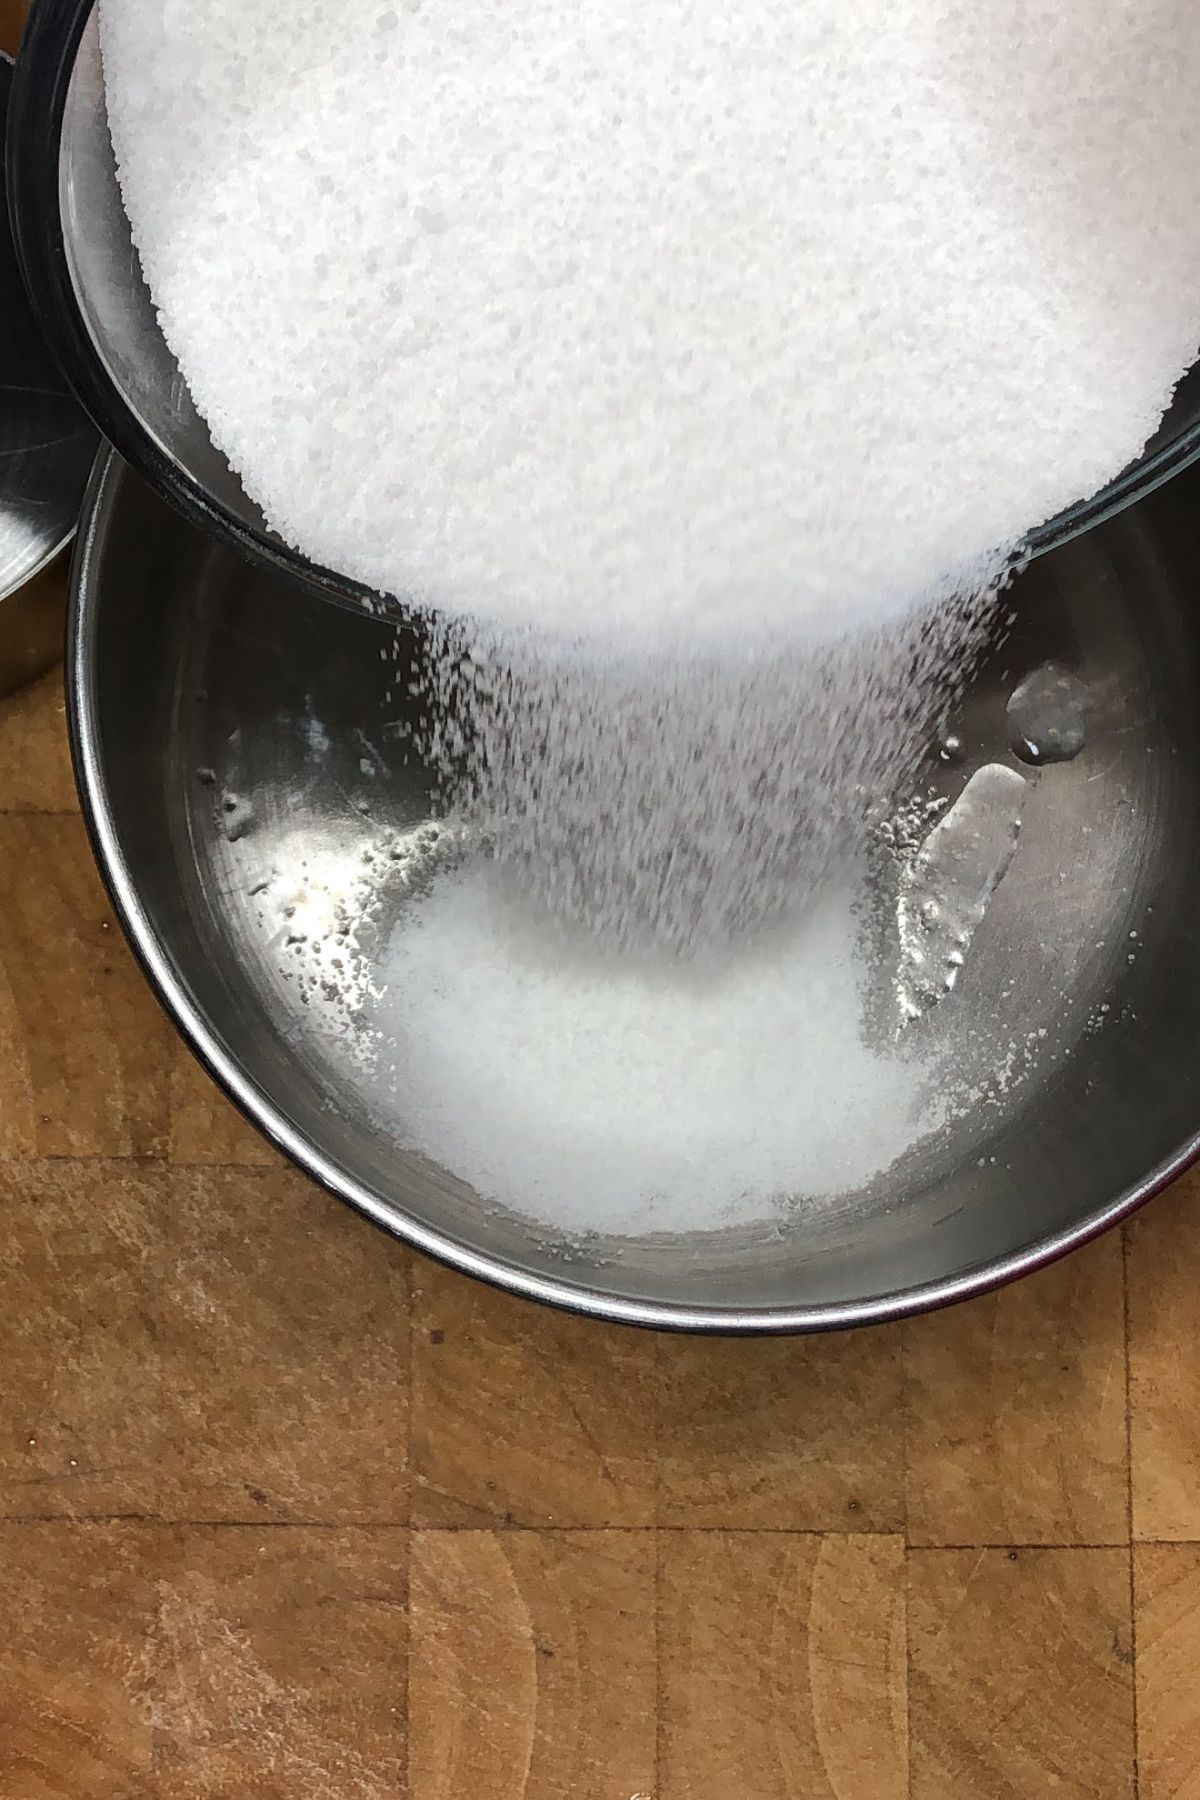 Pouring sugar into a pot.